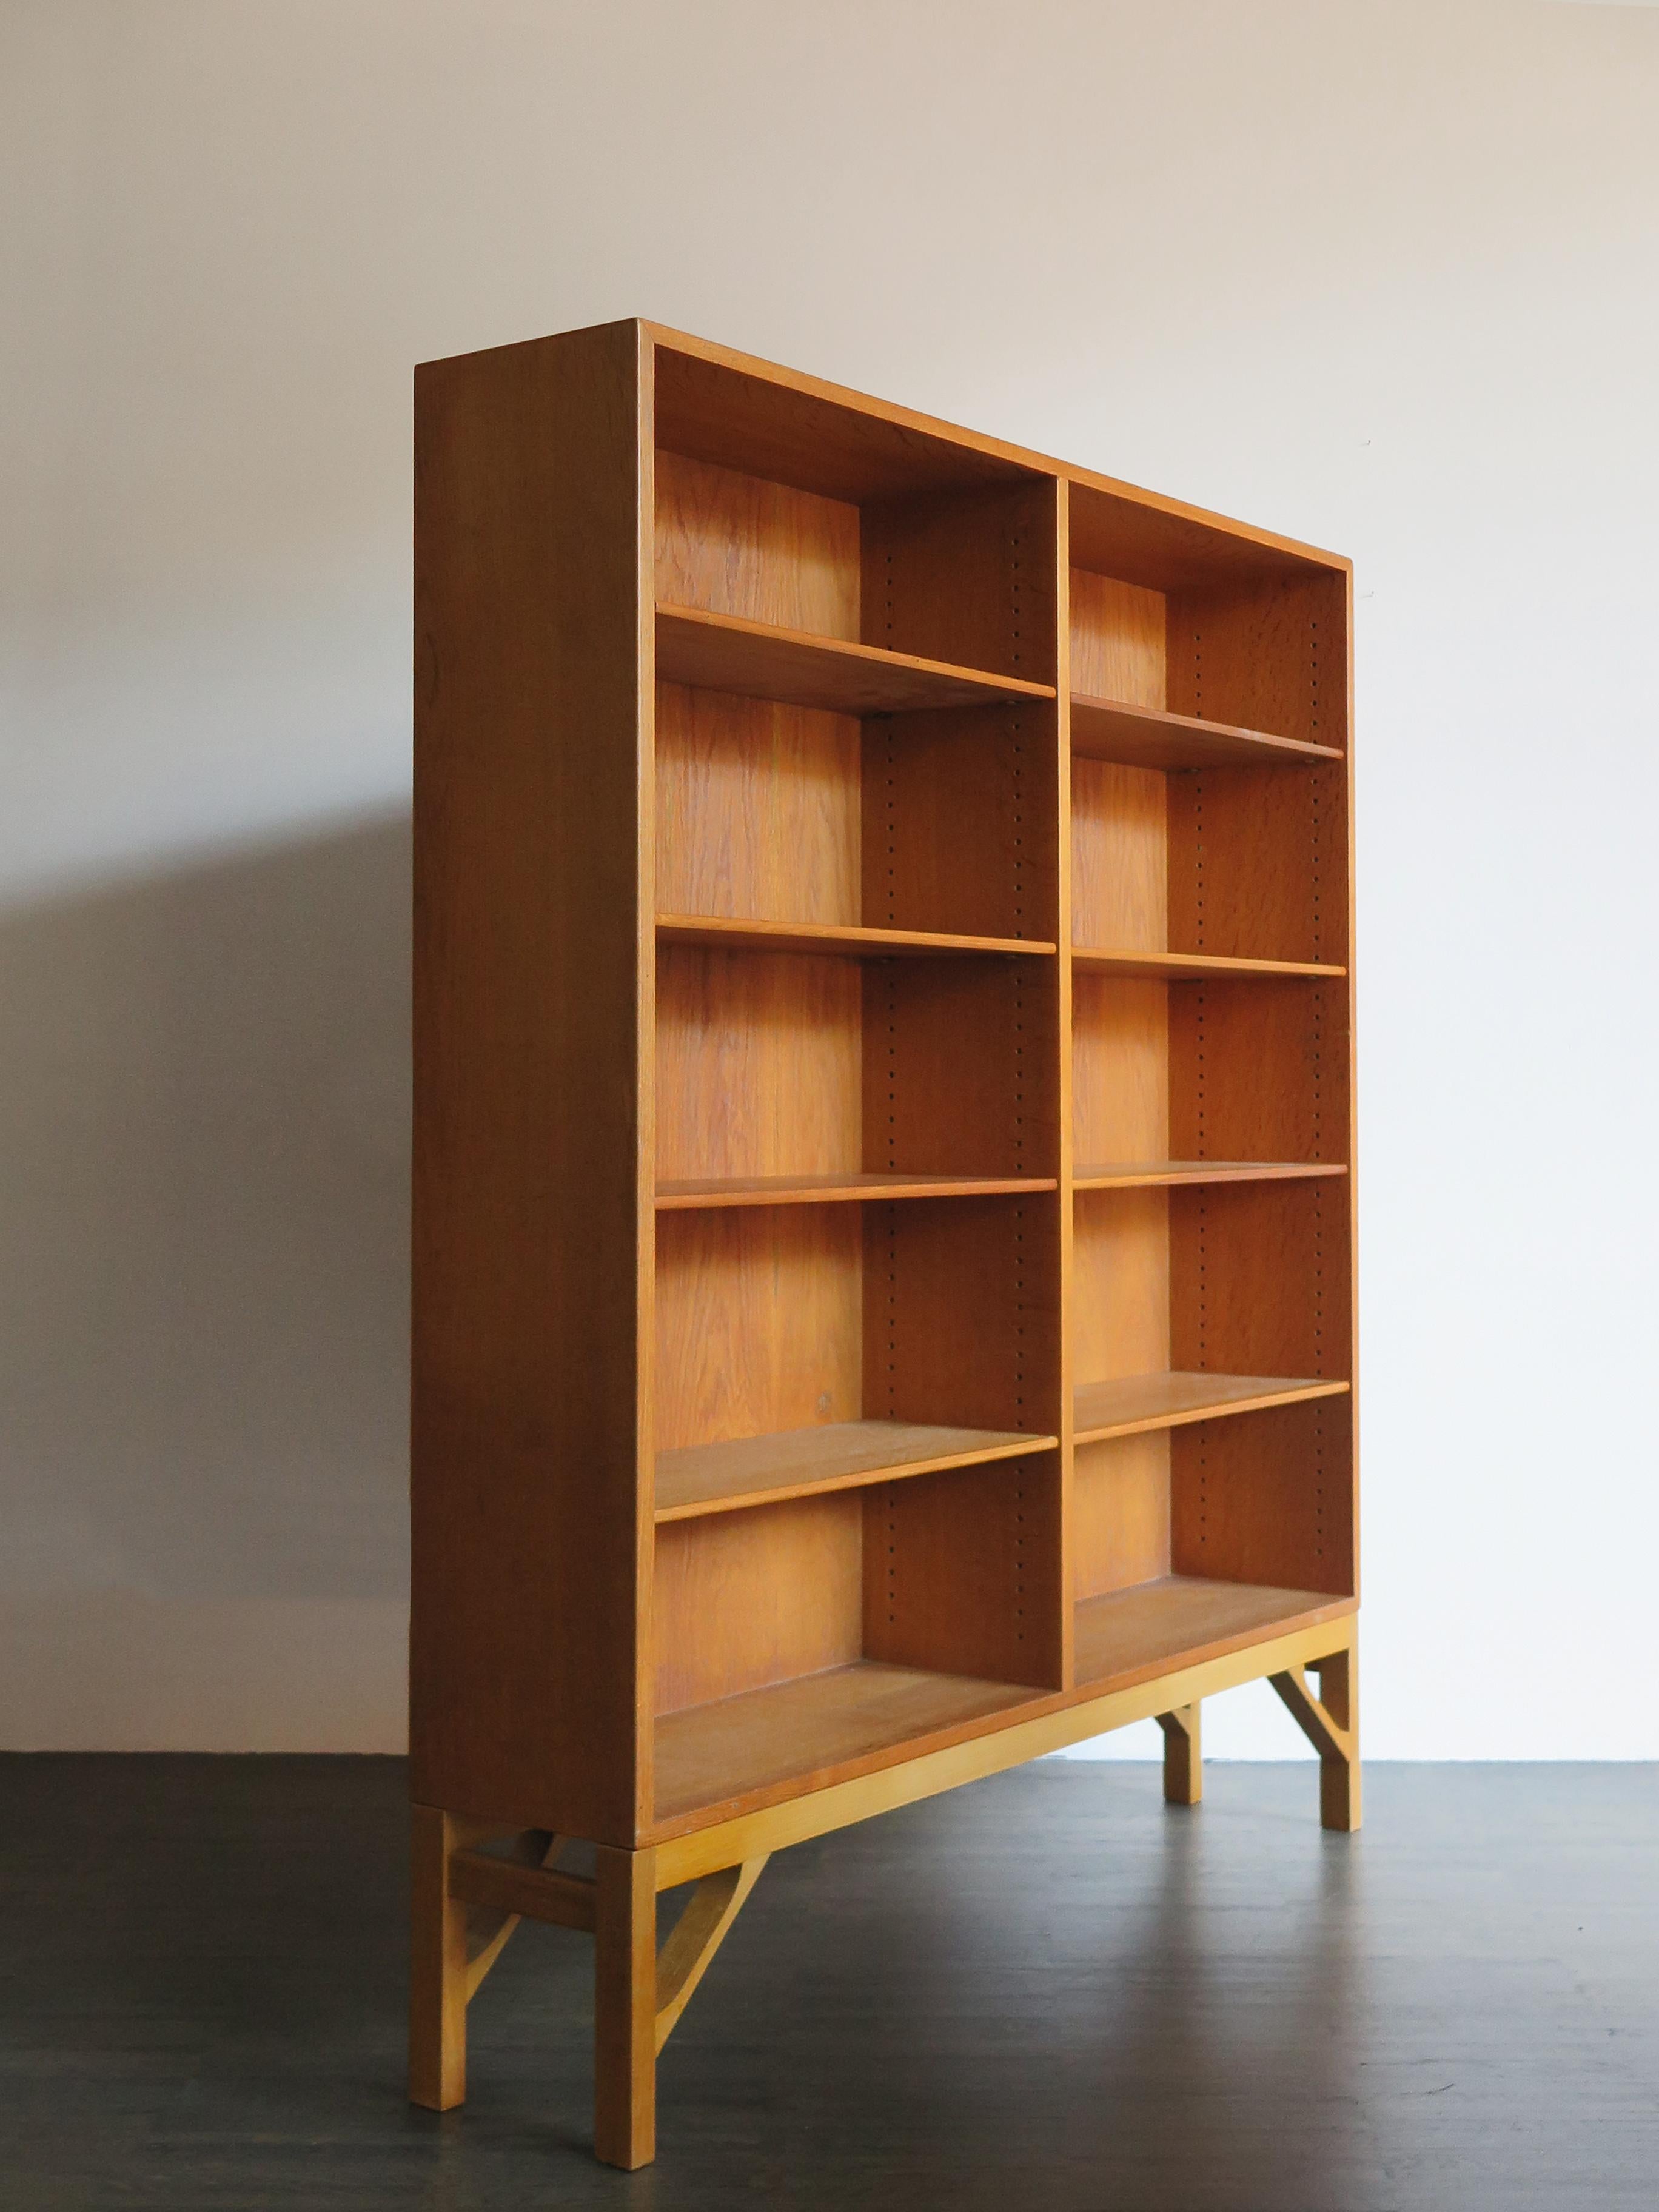 Skandinavisches Bücherregal aus Eichenholz, entworfen von Børge Mogensen in den 1950er Jahren und hergestellt von FDB Møbler in den 1960er Jahren, mit variabler Höhe der Einlegeböden, ca. 1960er Jahre.

Bitte beachten Sie, dass es sich um einen